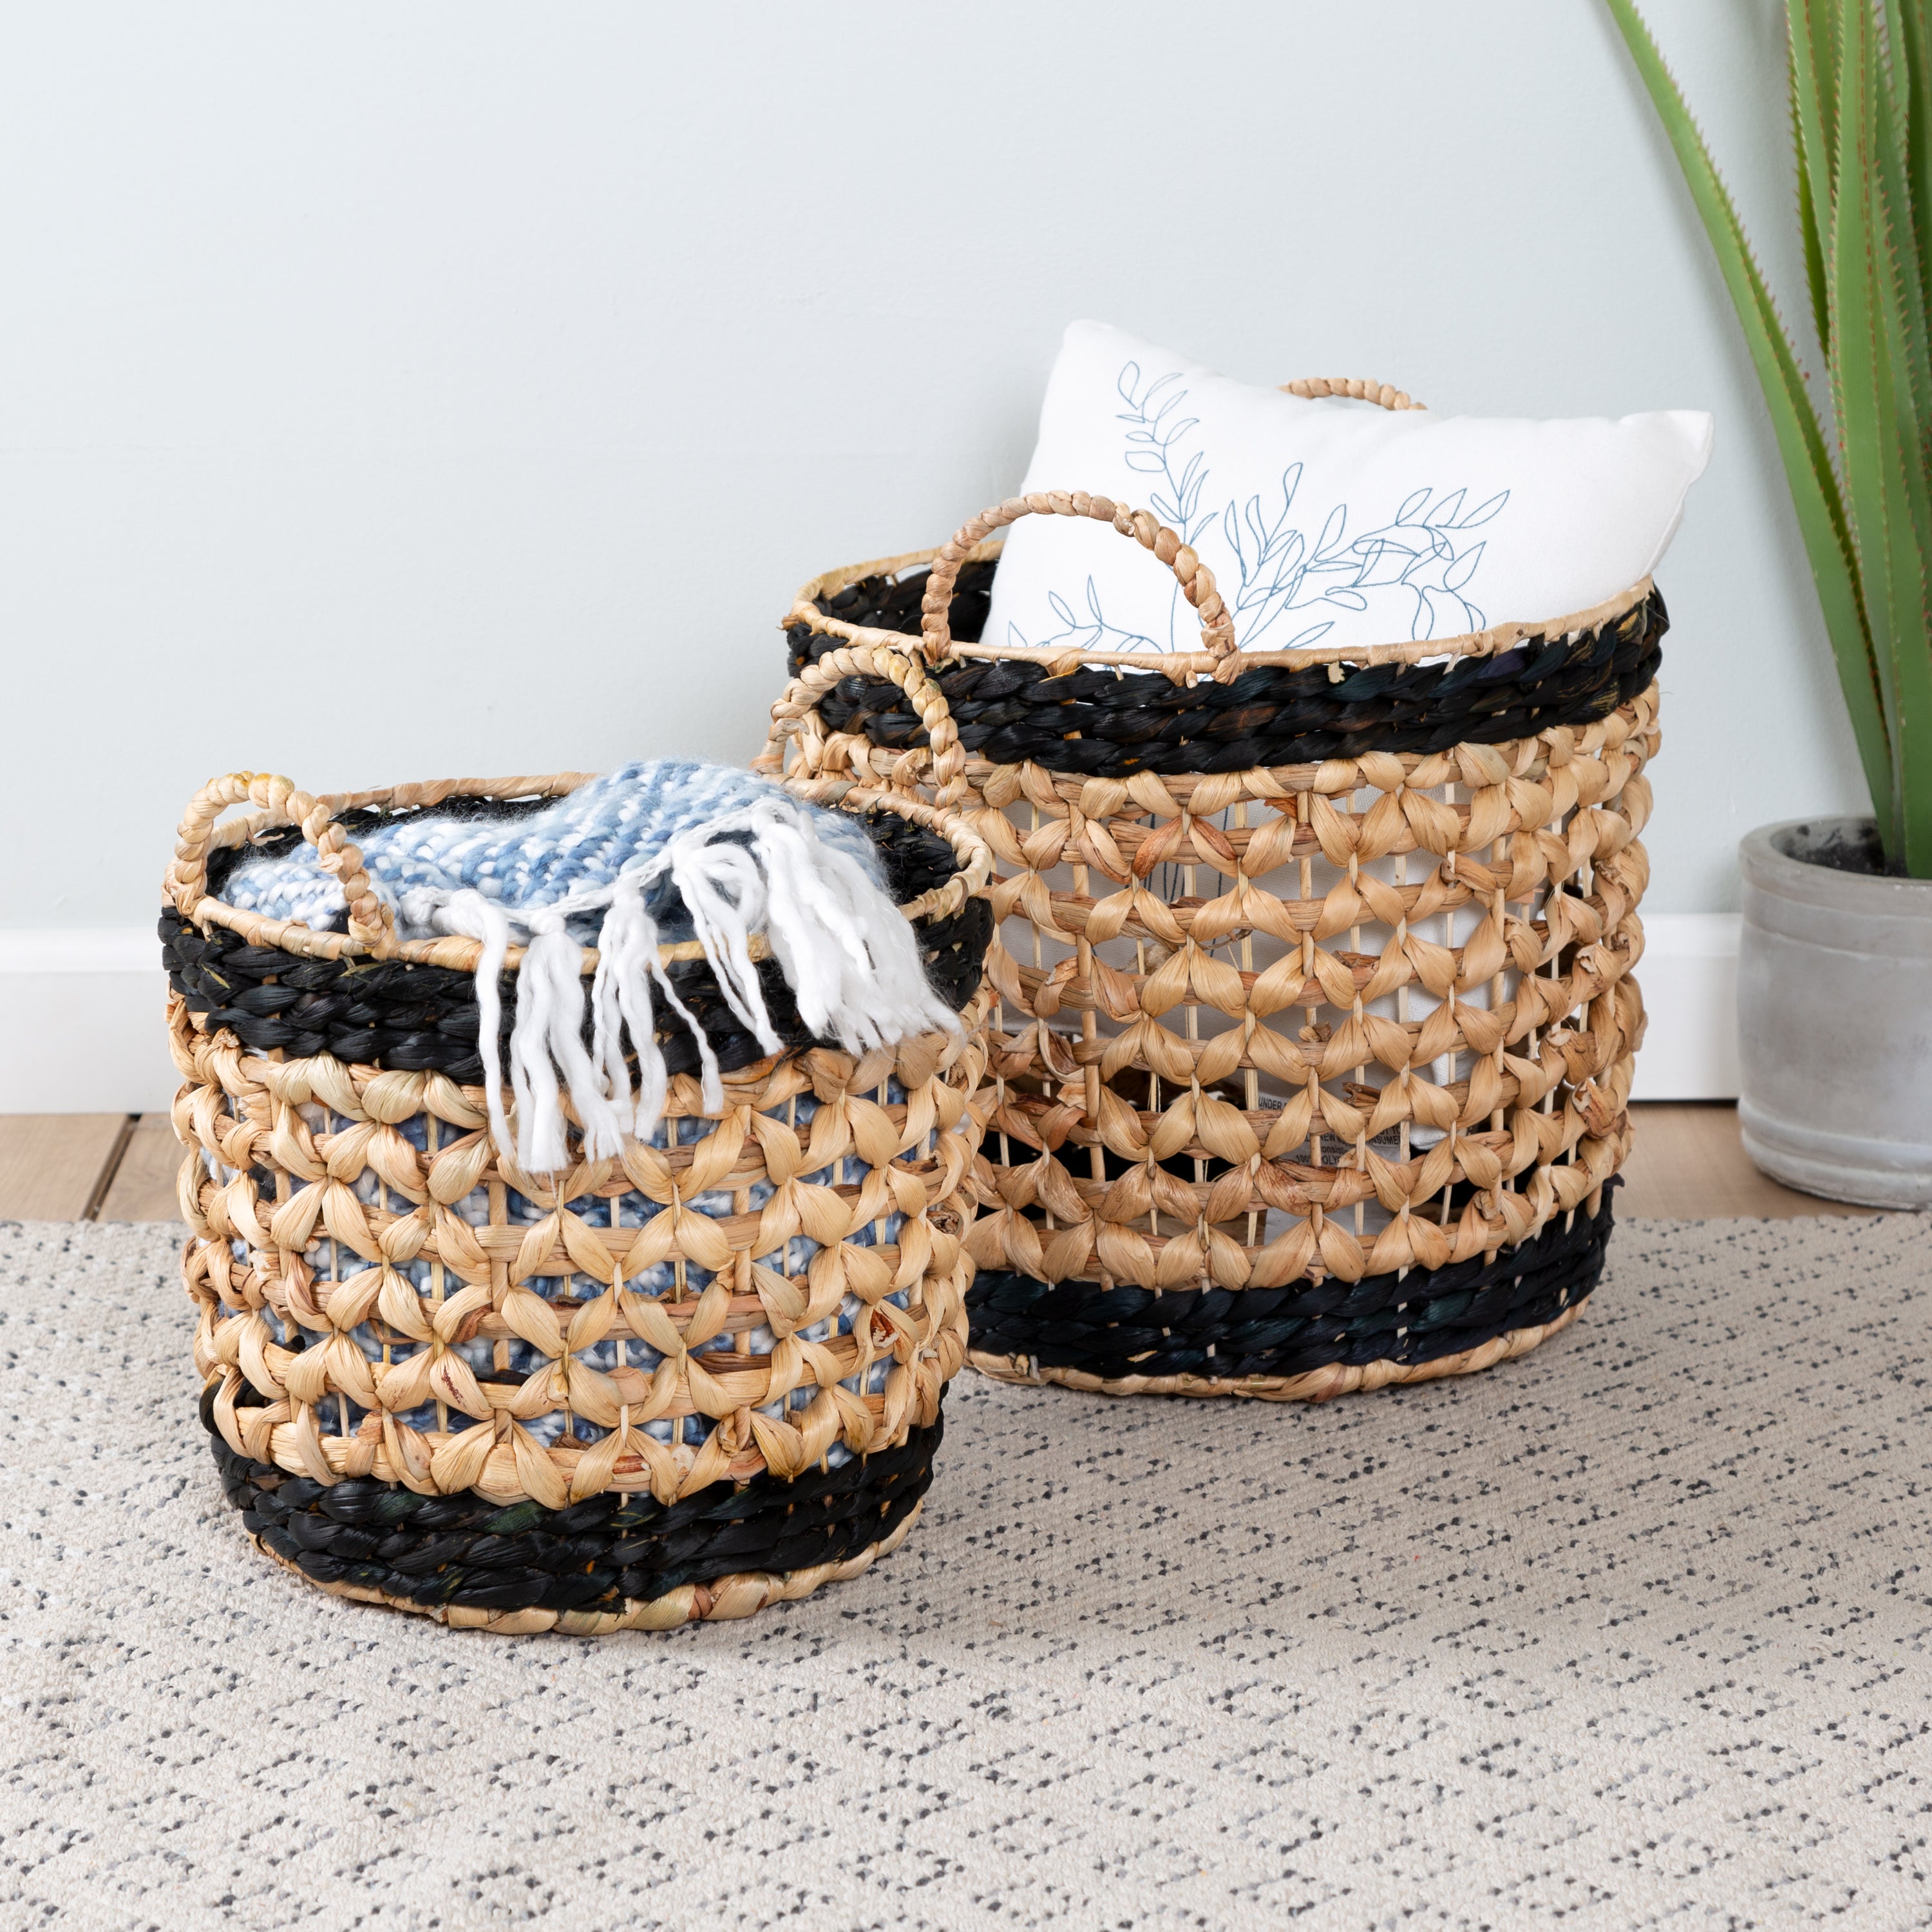 5 Piece Set Wicker Basket, Woven Storage Baskets (Brown)